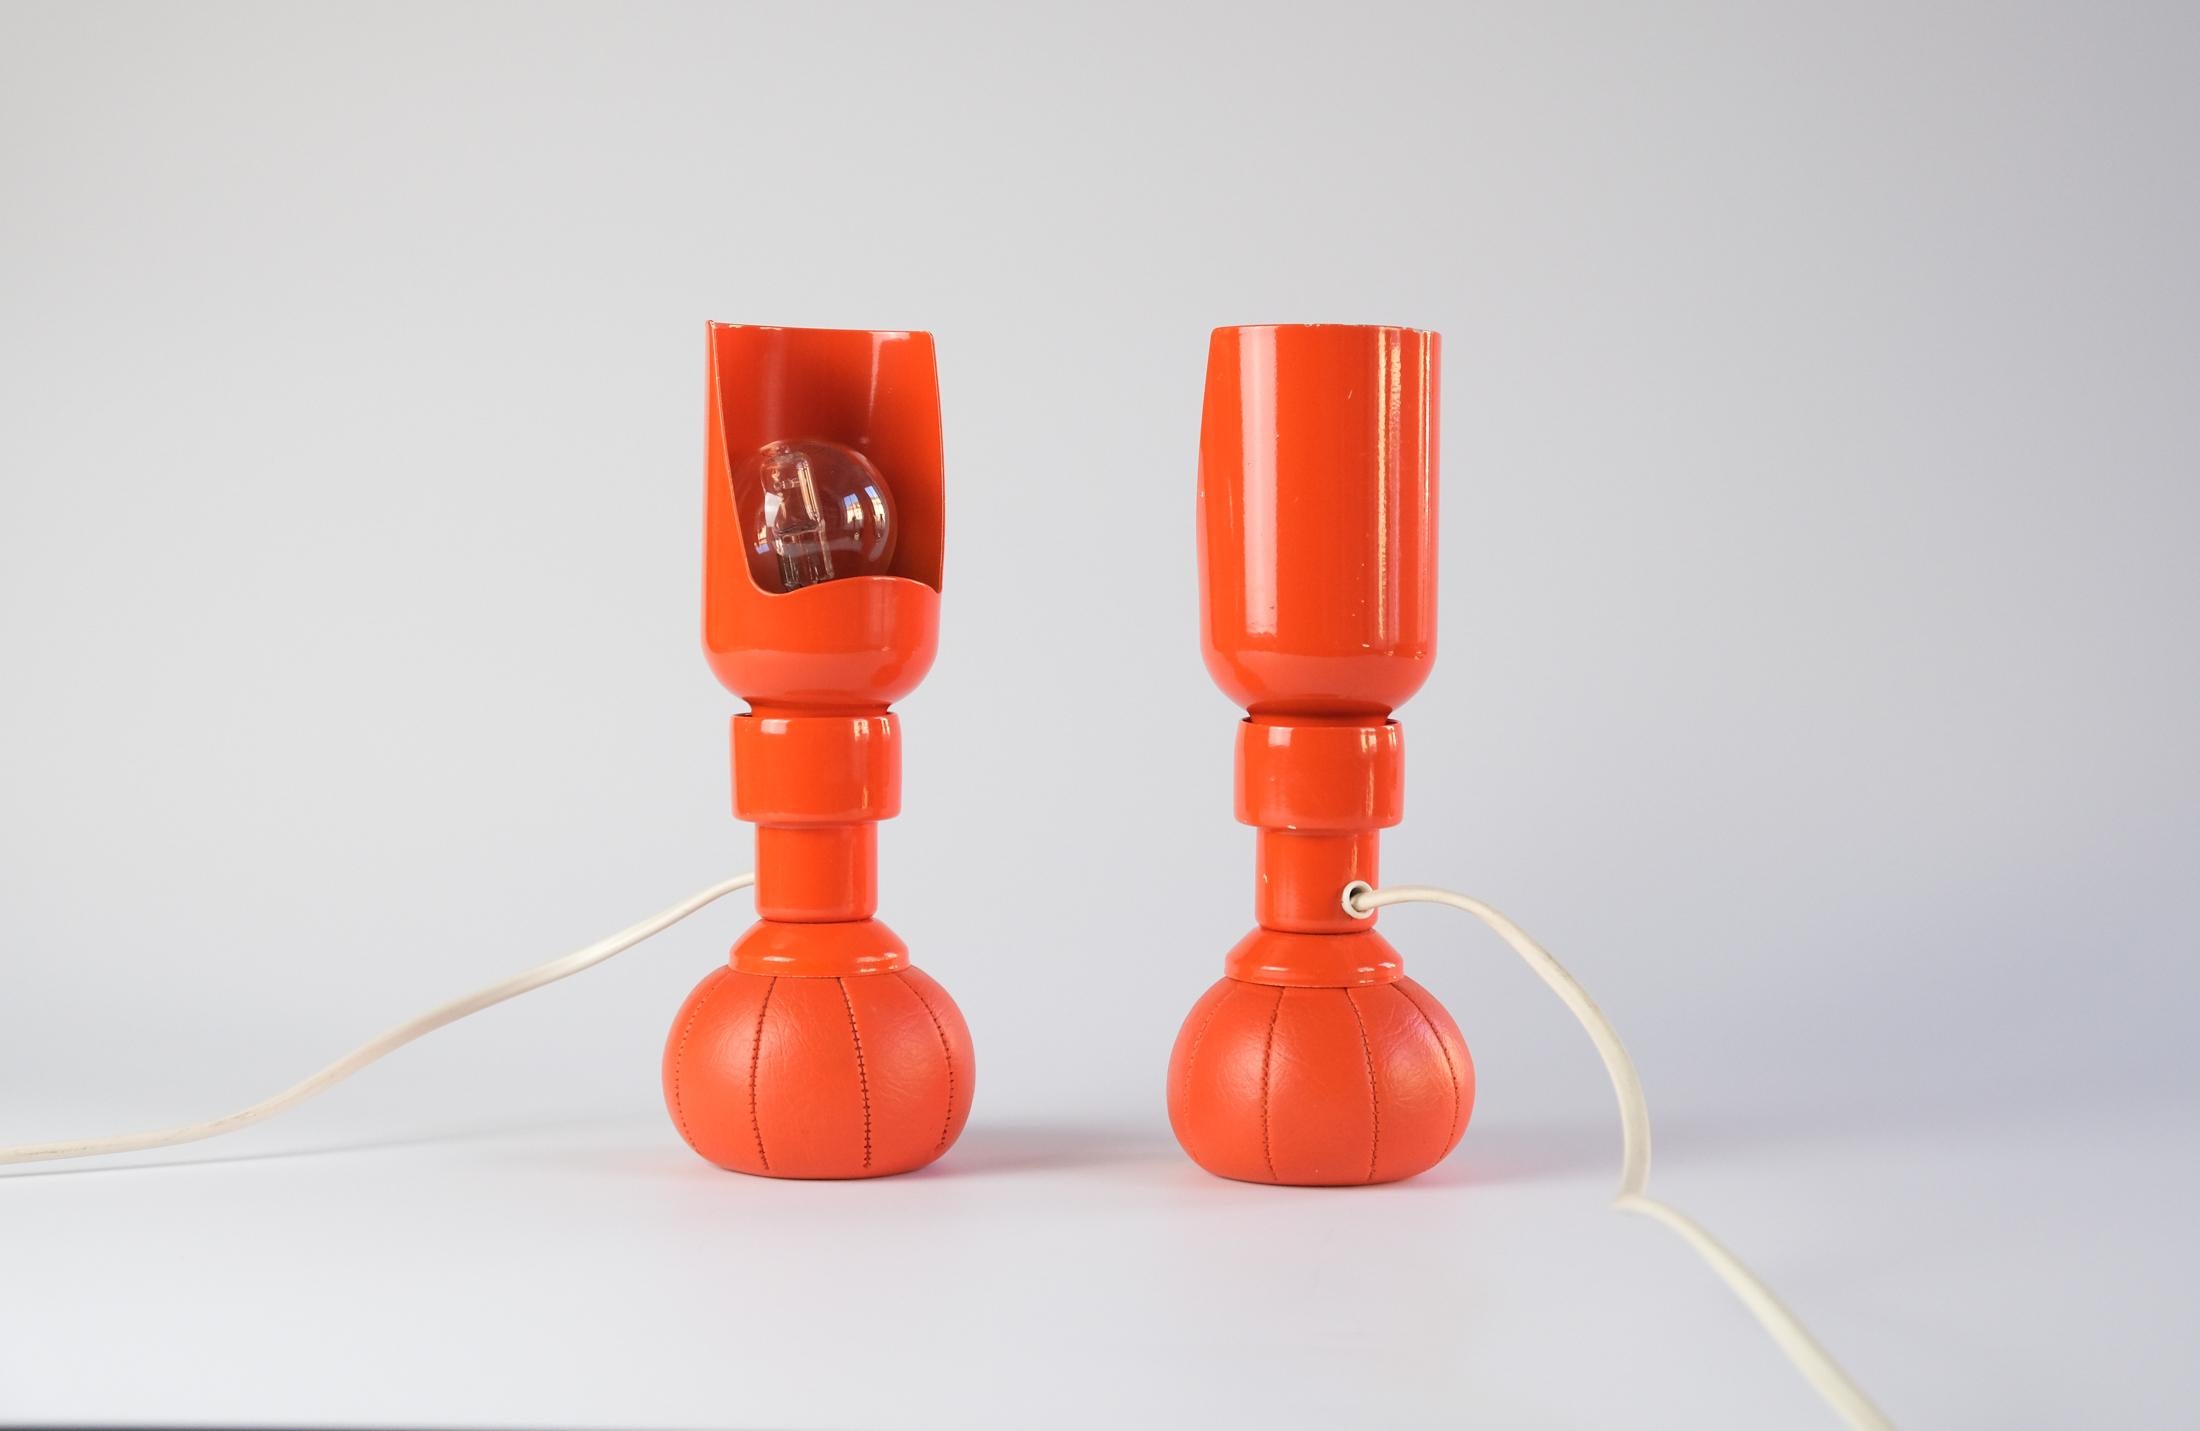 Zum Verkauf stehen zwei ikonische und äußerst seltene orangefarbene Tischlampen 600P von GINO SARFATTI, die 1966 entworfen und von Arteluce in Italien hergestellt wurden.

Dank der mit Blei gefüllten, beschwerten Sockel können die Lampen in jedem